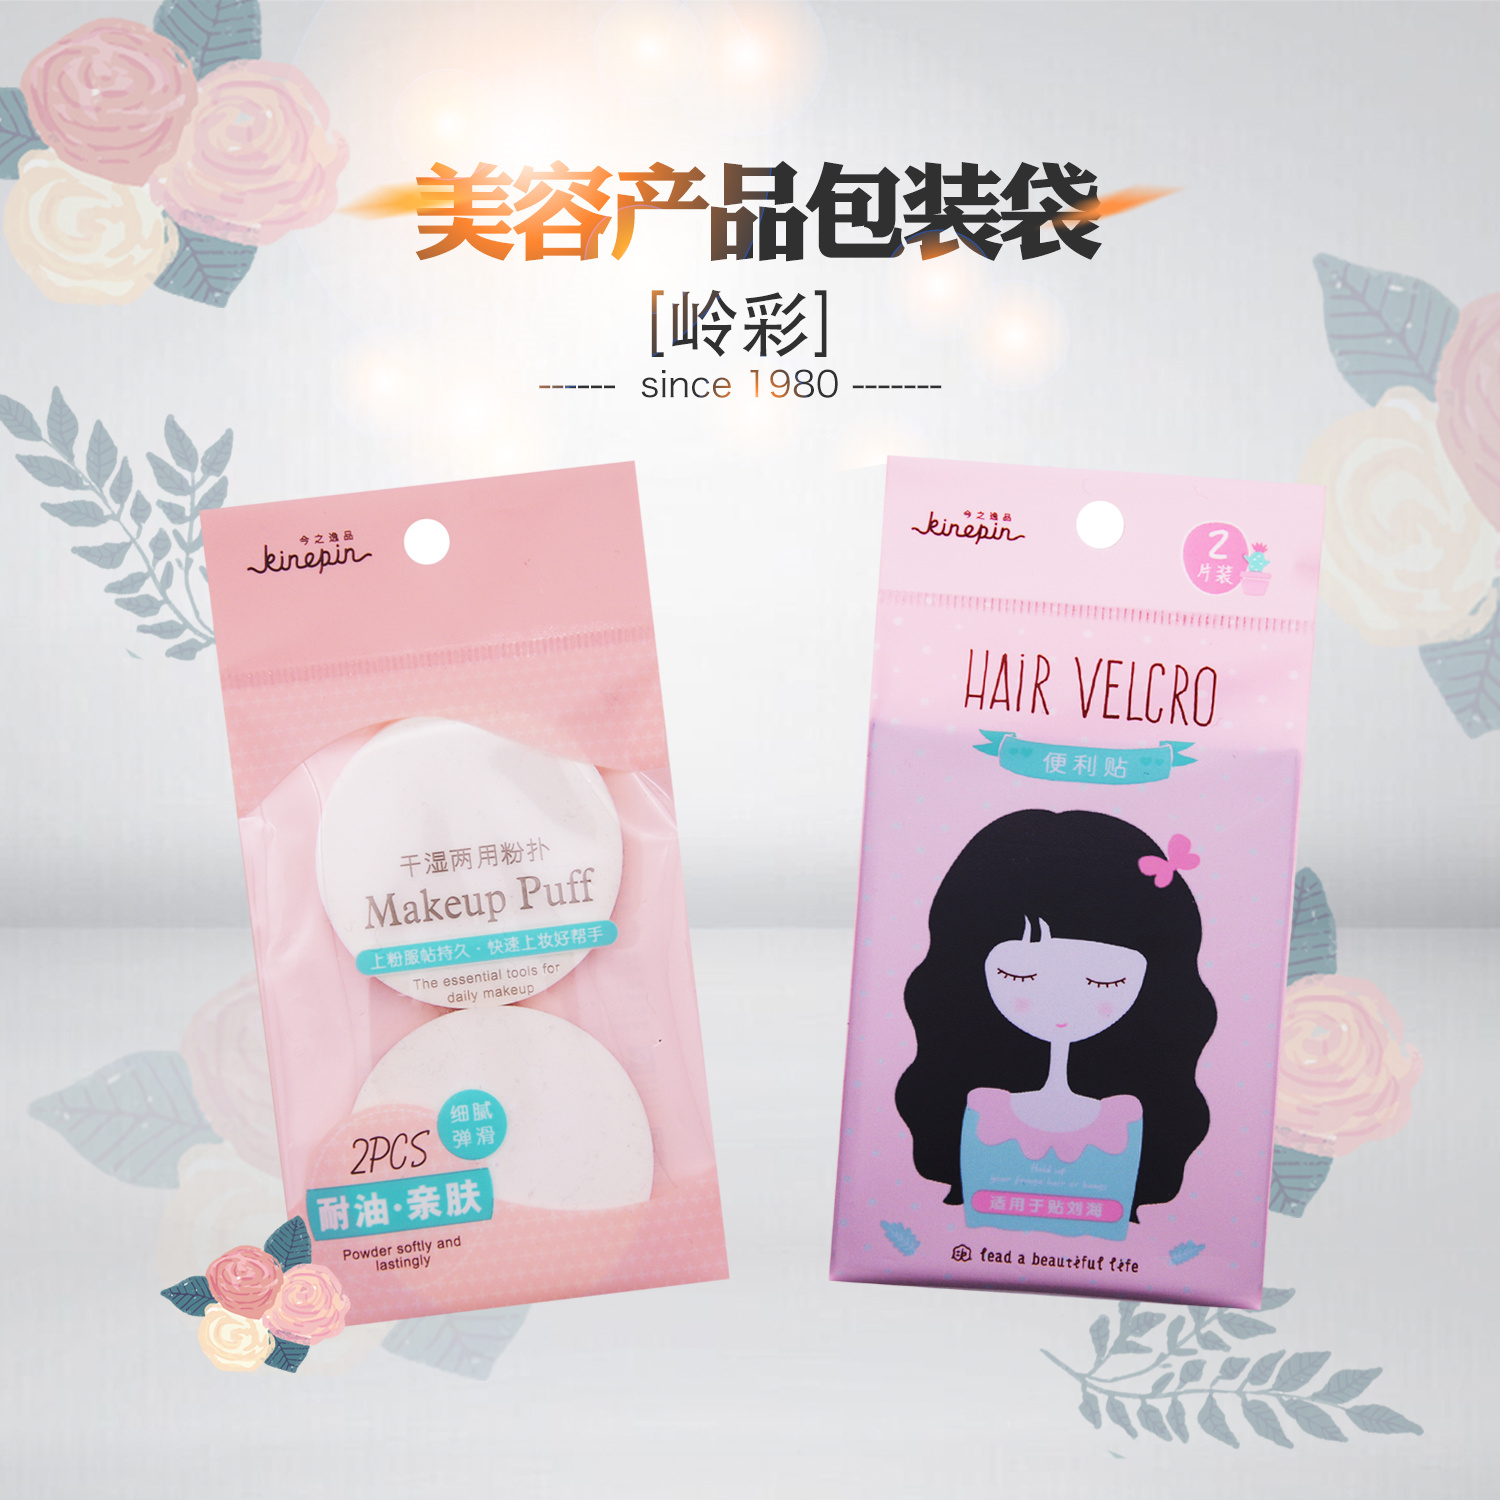 Self-adhesive bag-cosmetics series